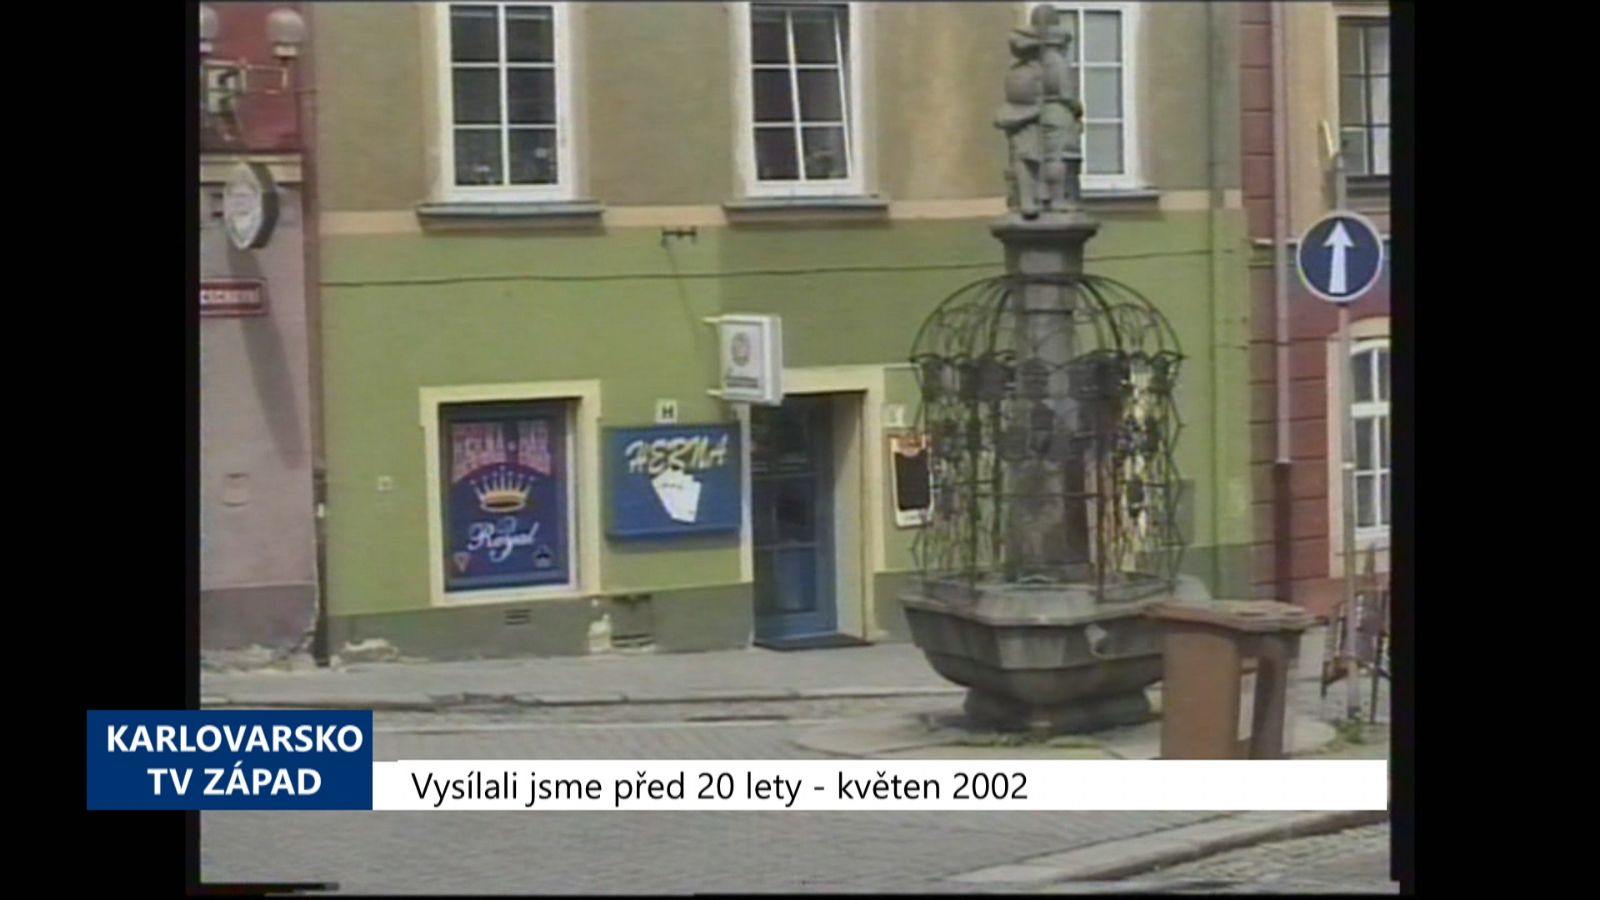 2002 – Cheb: Město chce kvůli hernám změnit Územní plán (TV Západ)